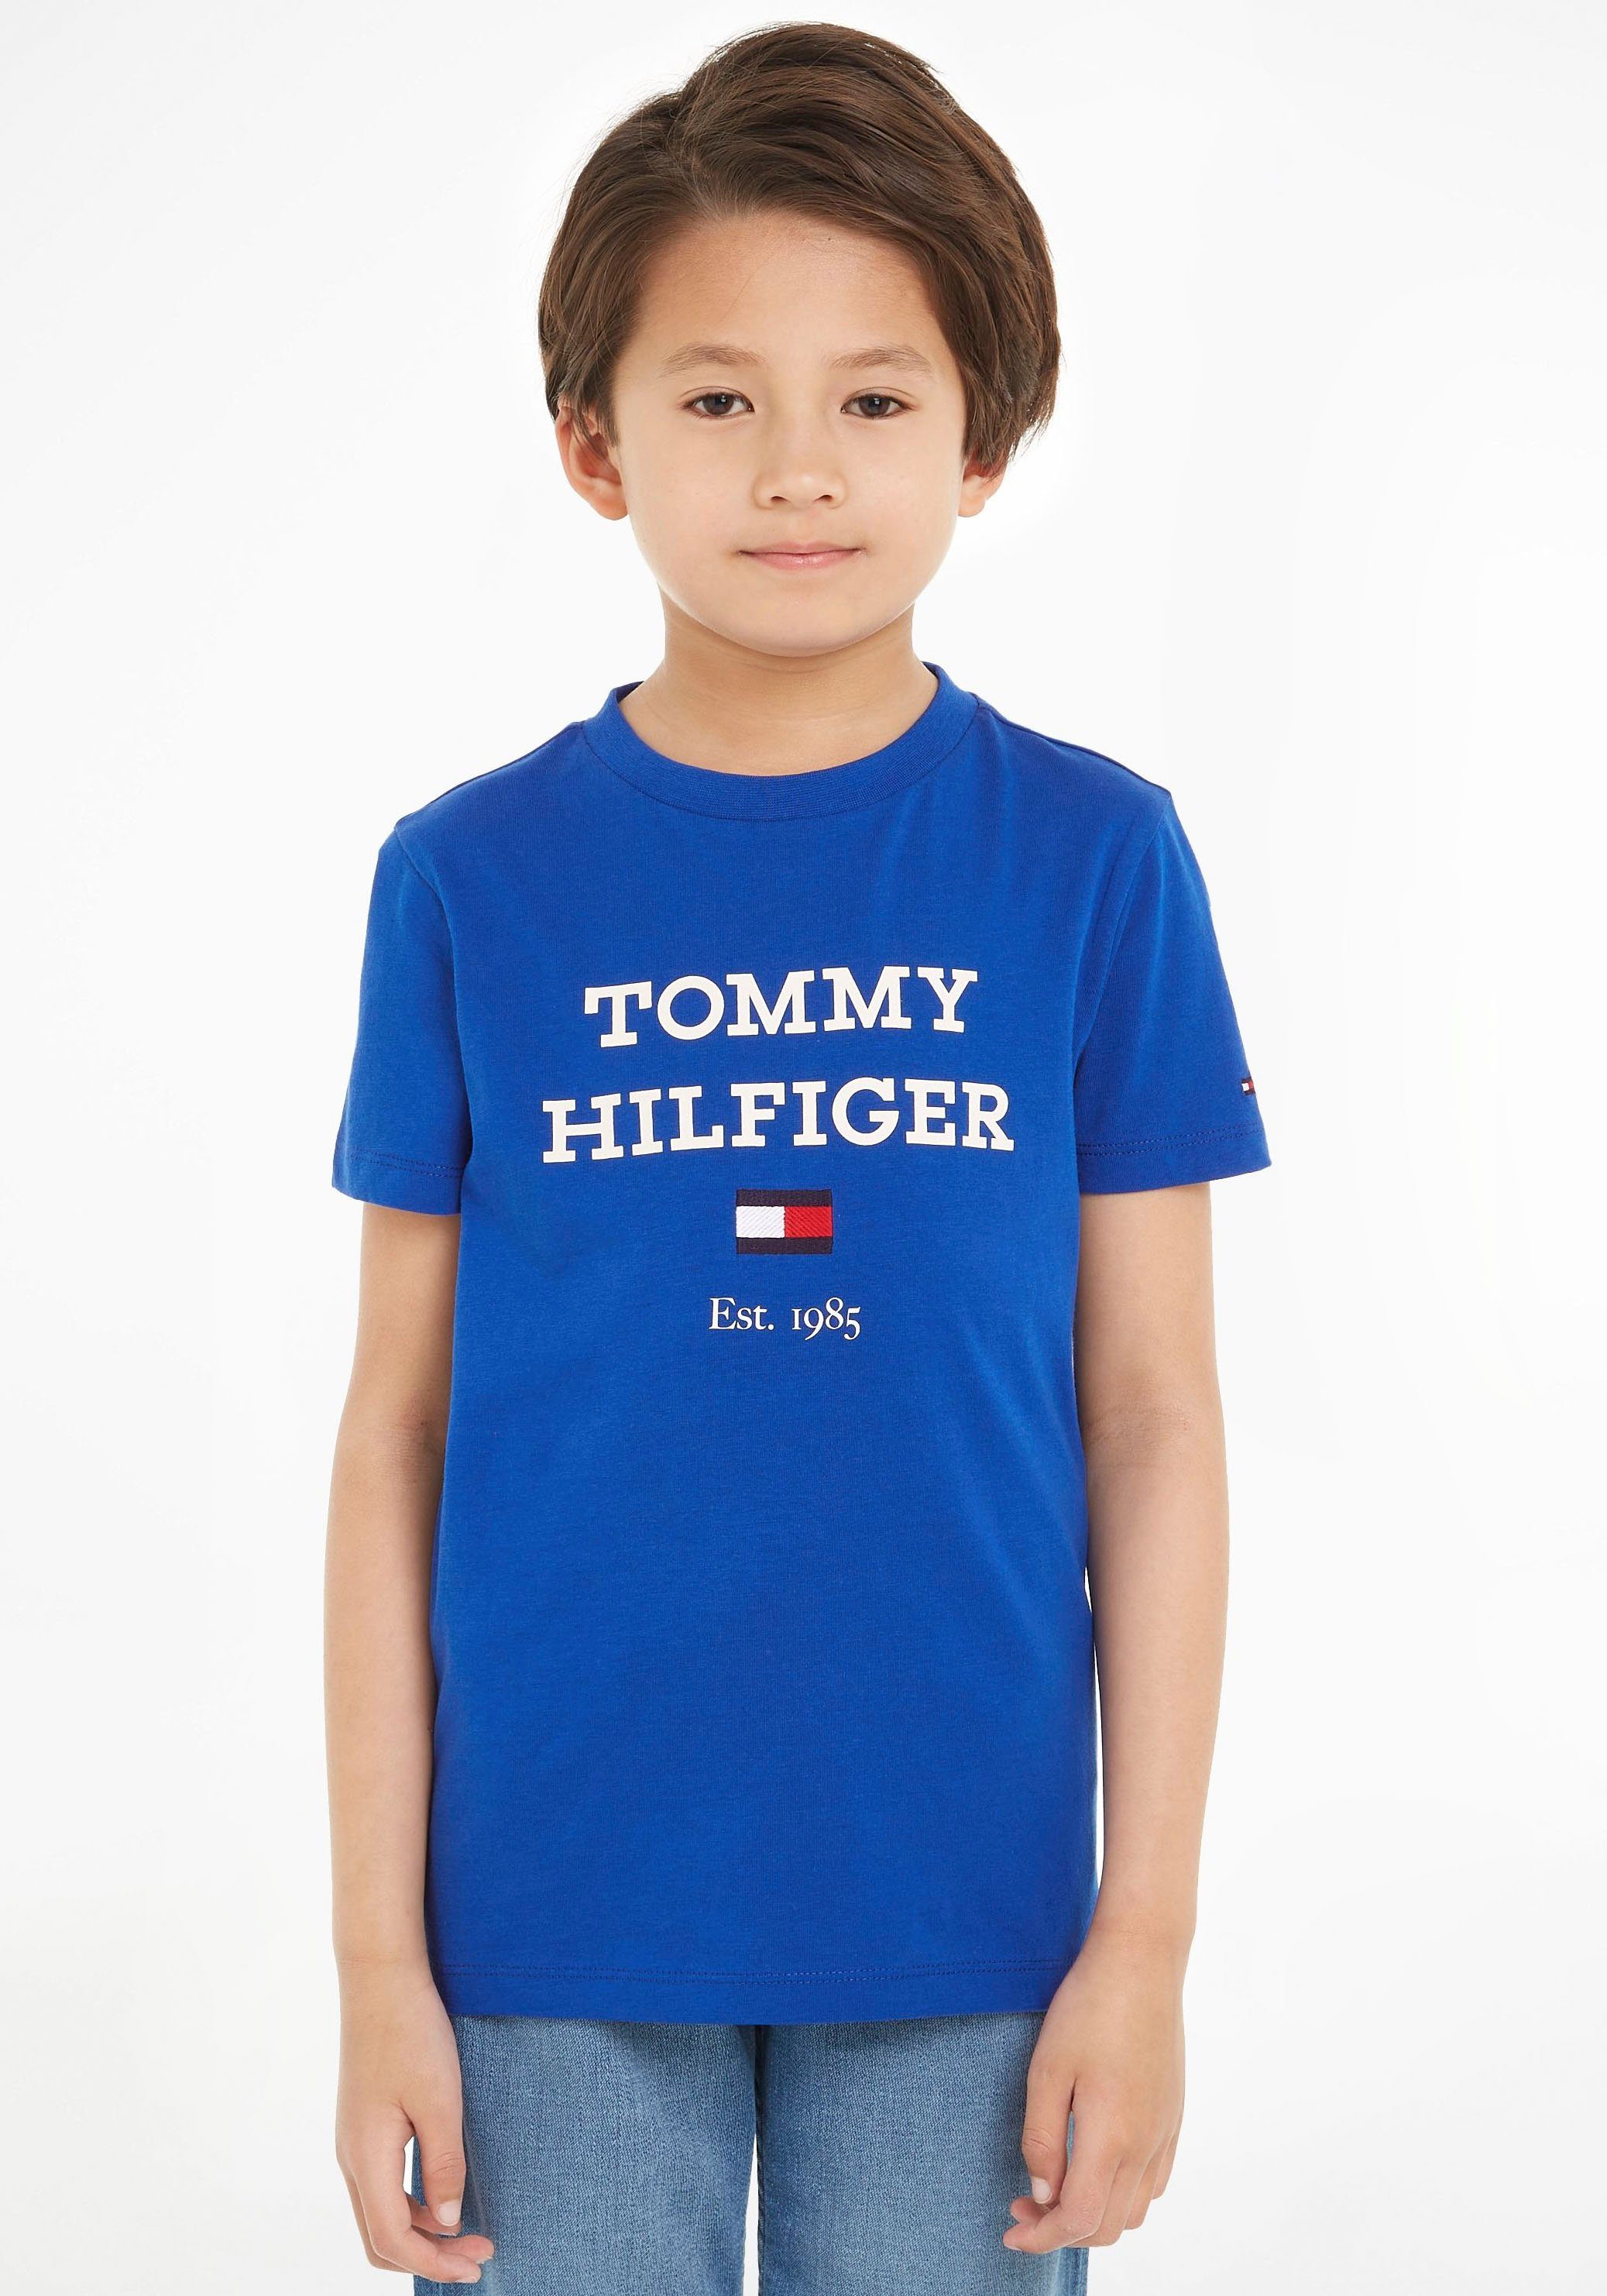 Tommy Hilfiger T-shirt met tekst helderblauw Jongens Katoen Ronde hals 122